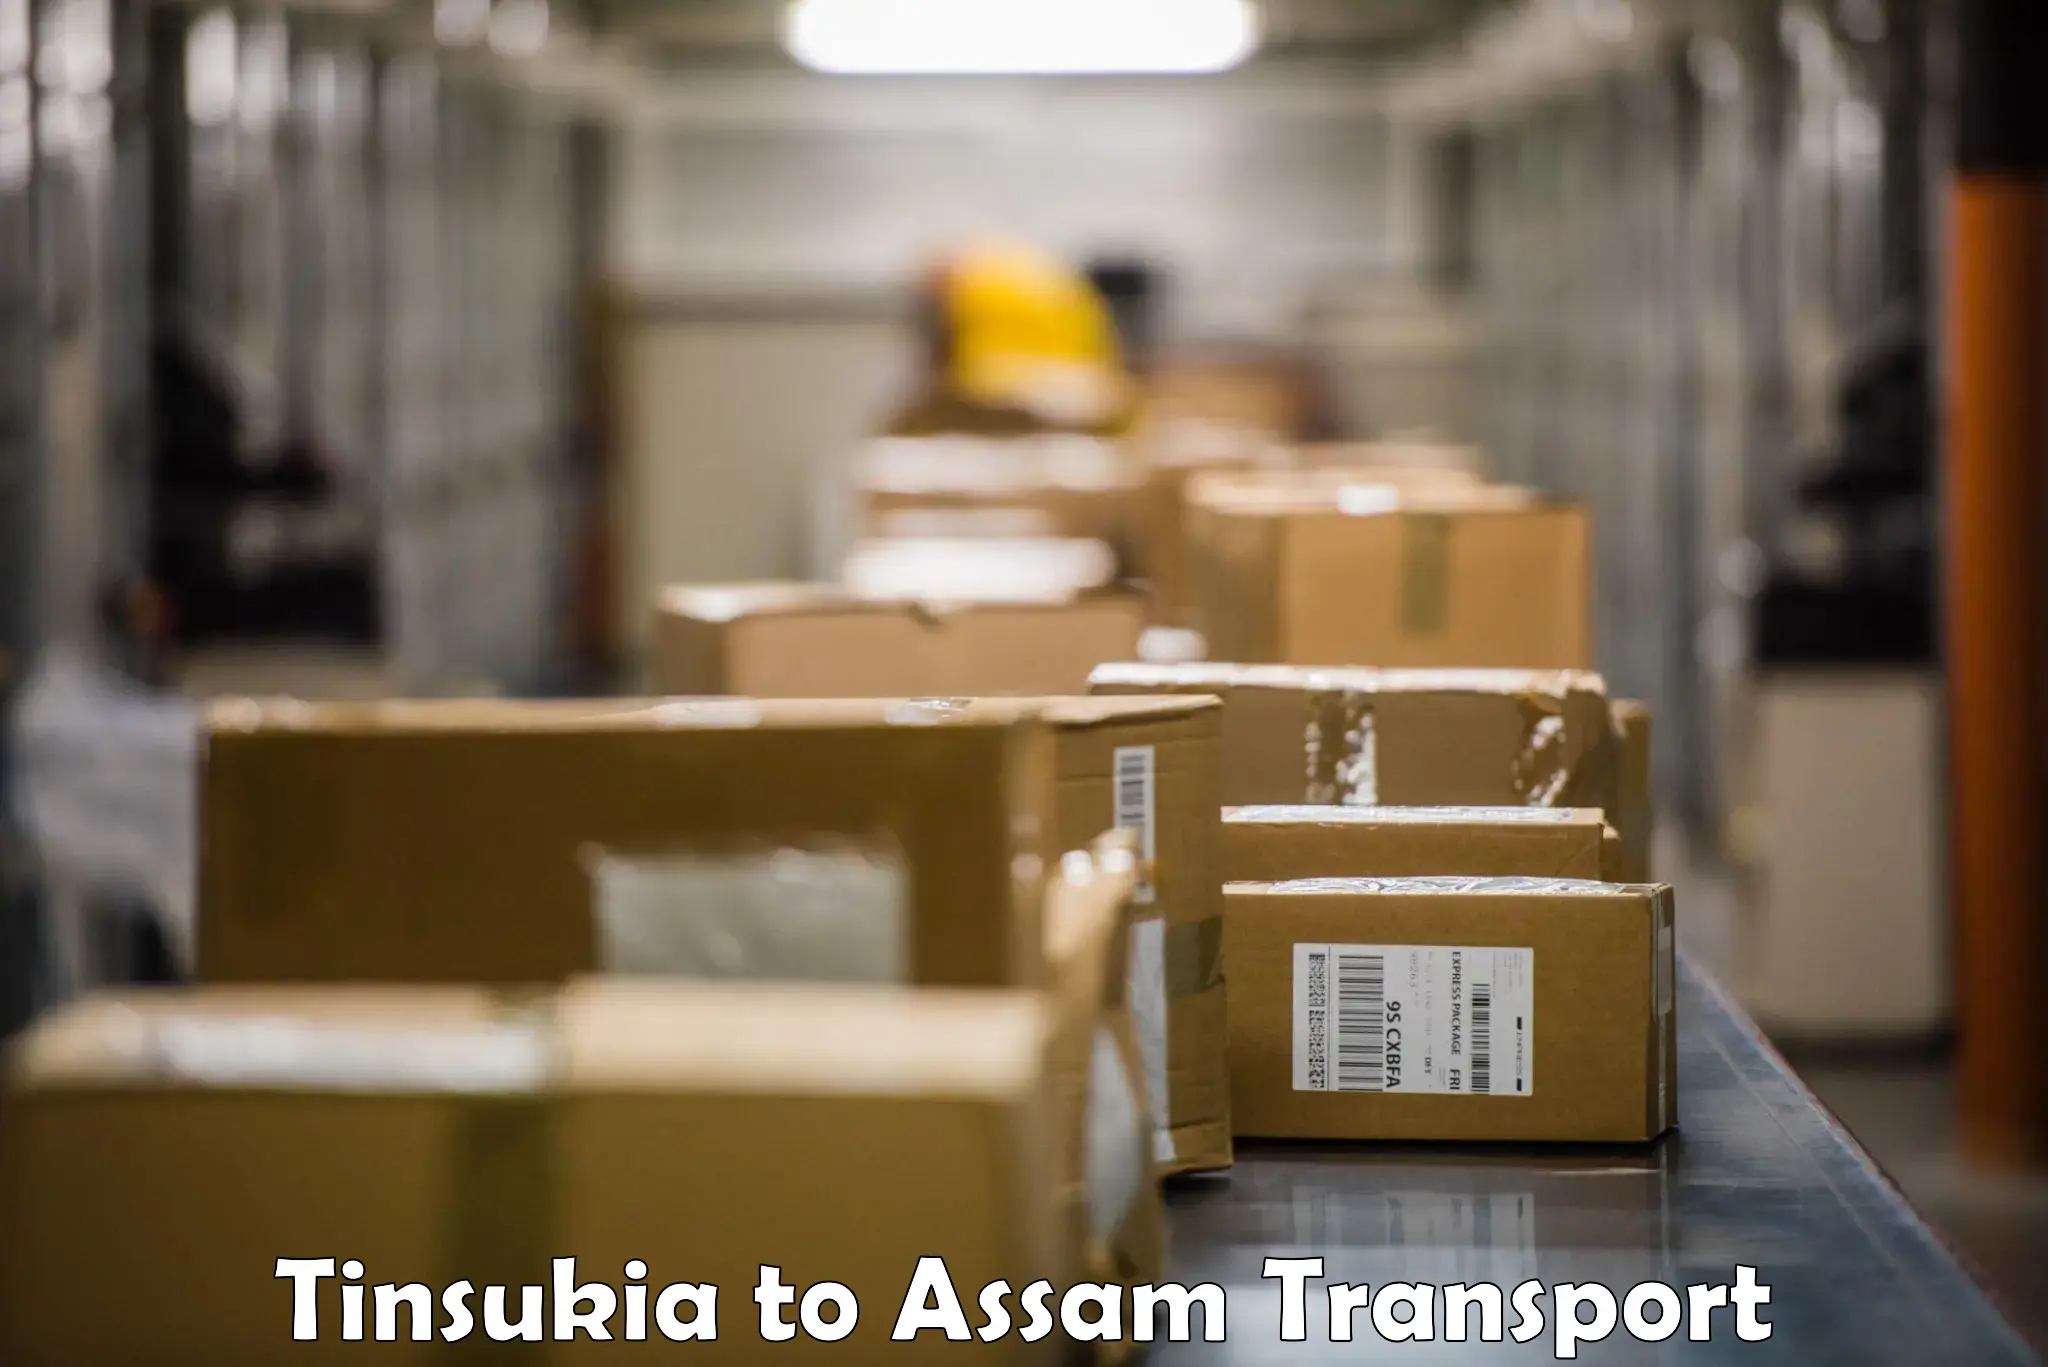 Air freight transport services Tinsukia to Tinsukia